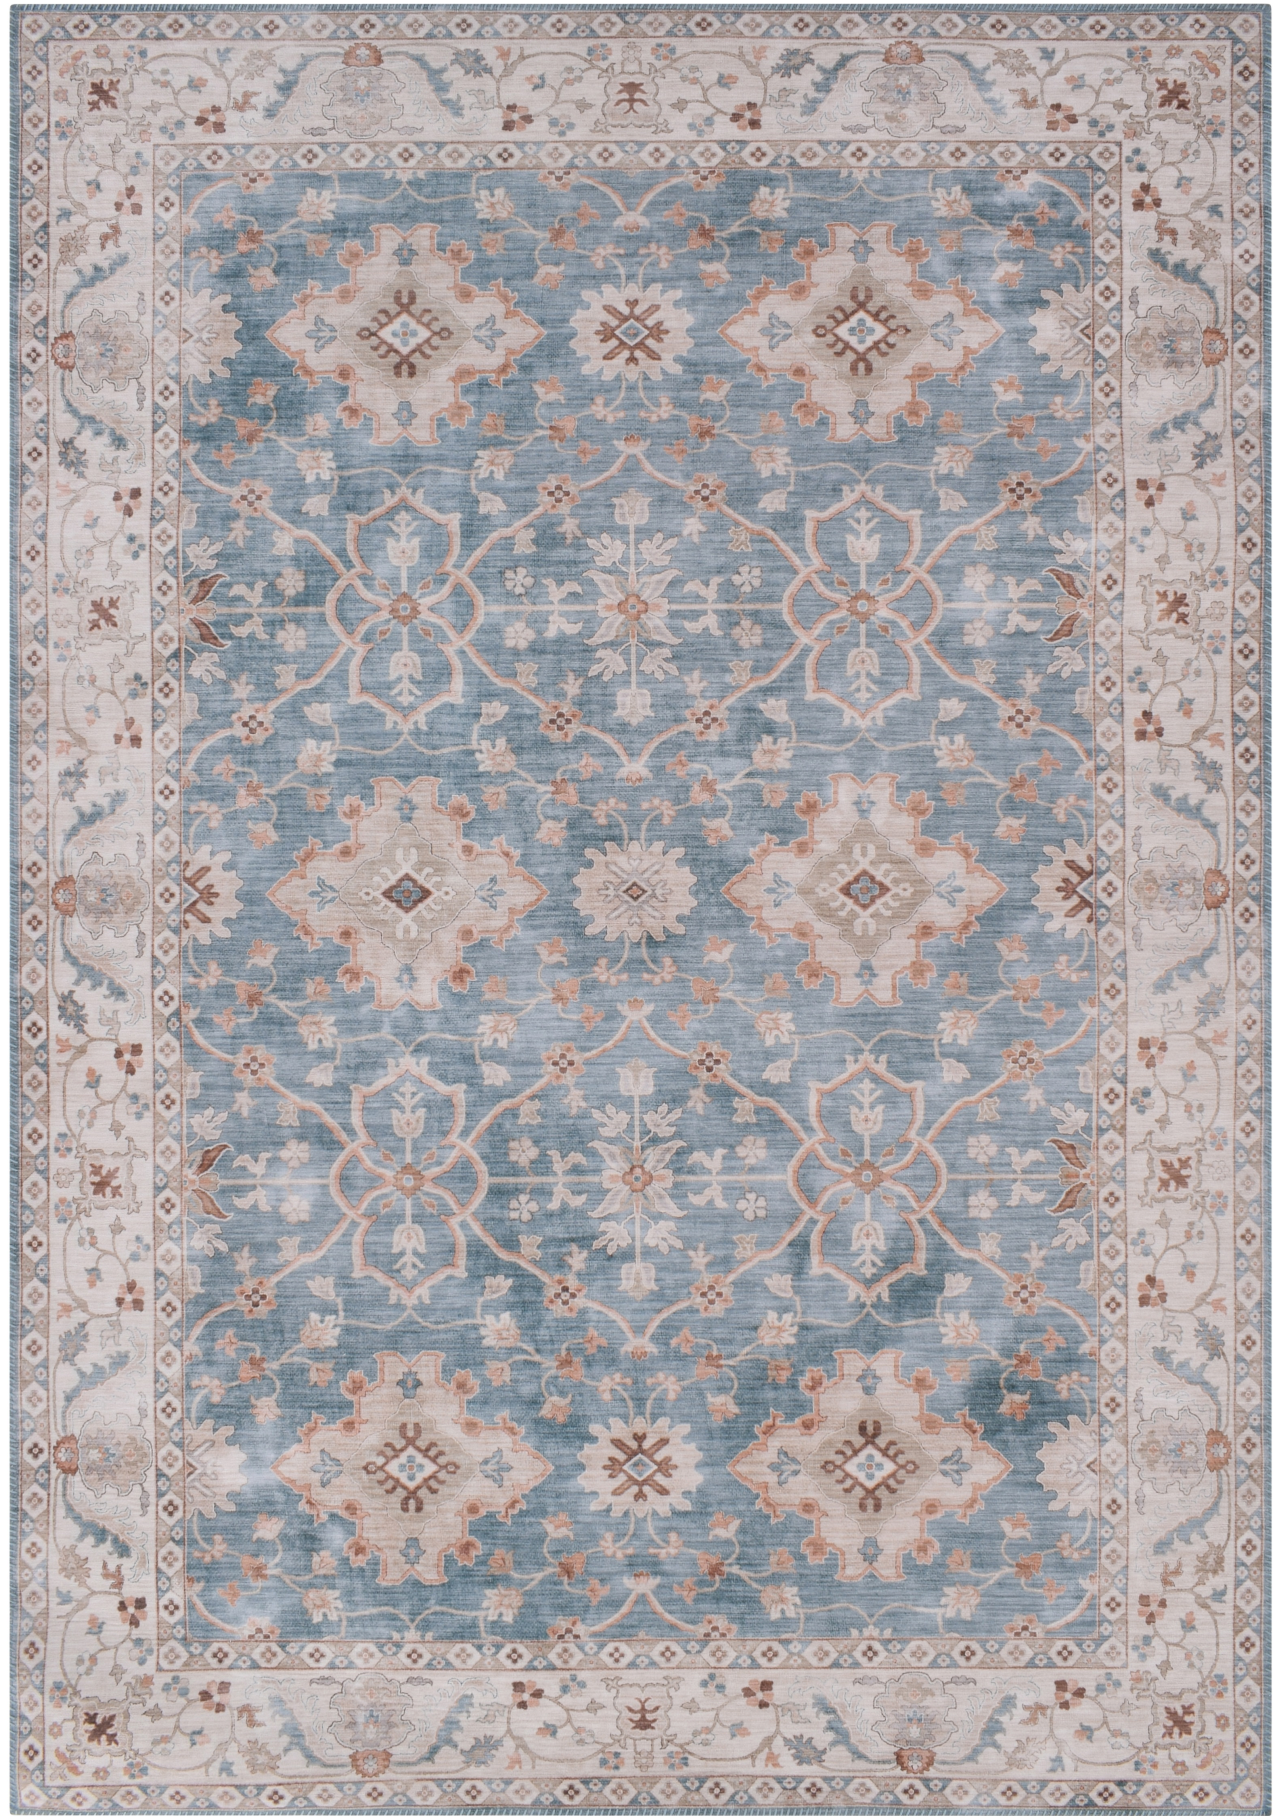 Zeug noodsituatie Haas Vintage tapijt, klassiek, bedrukt, blauw | Onlinemattenshop